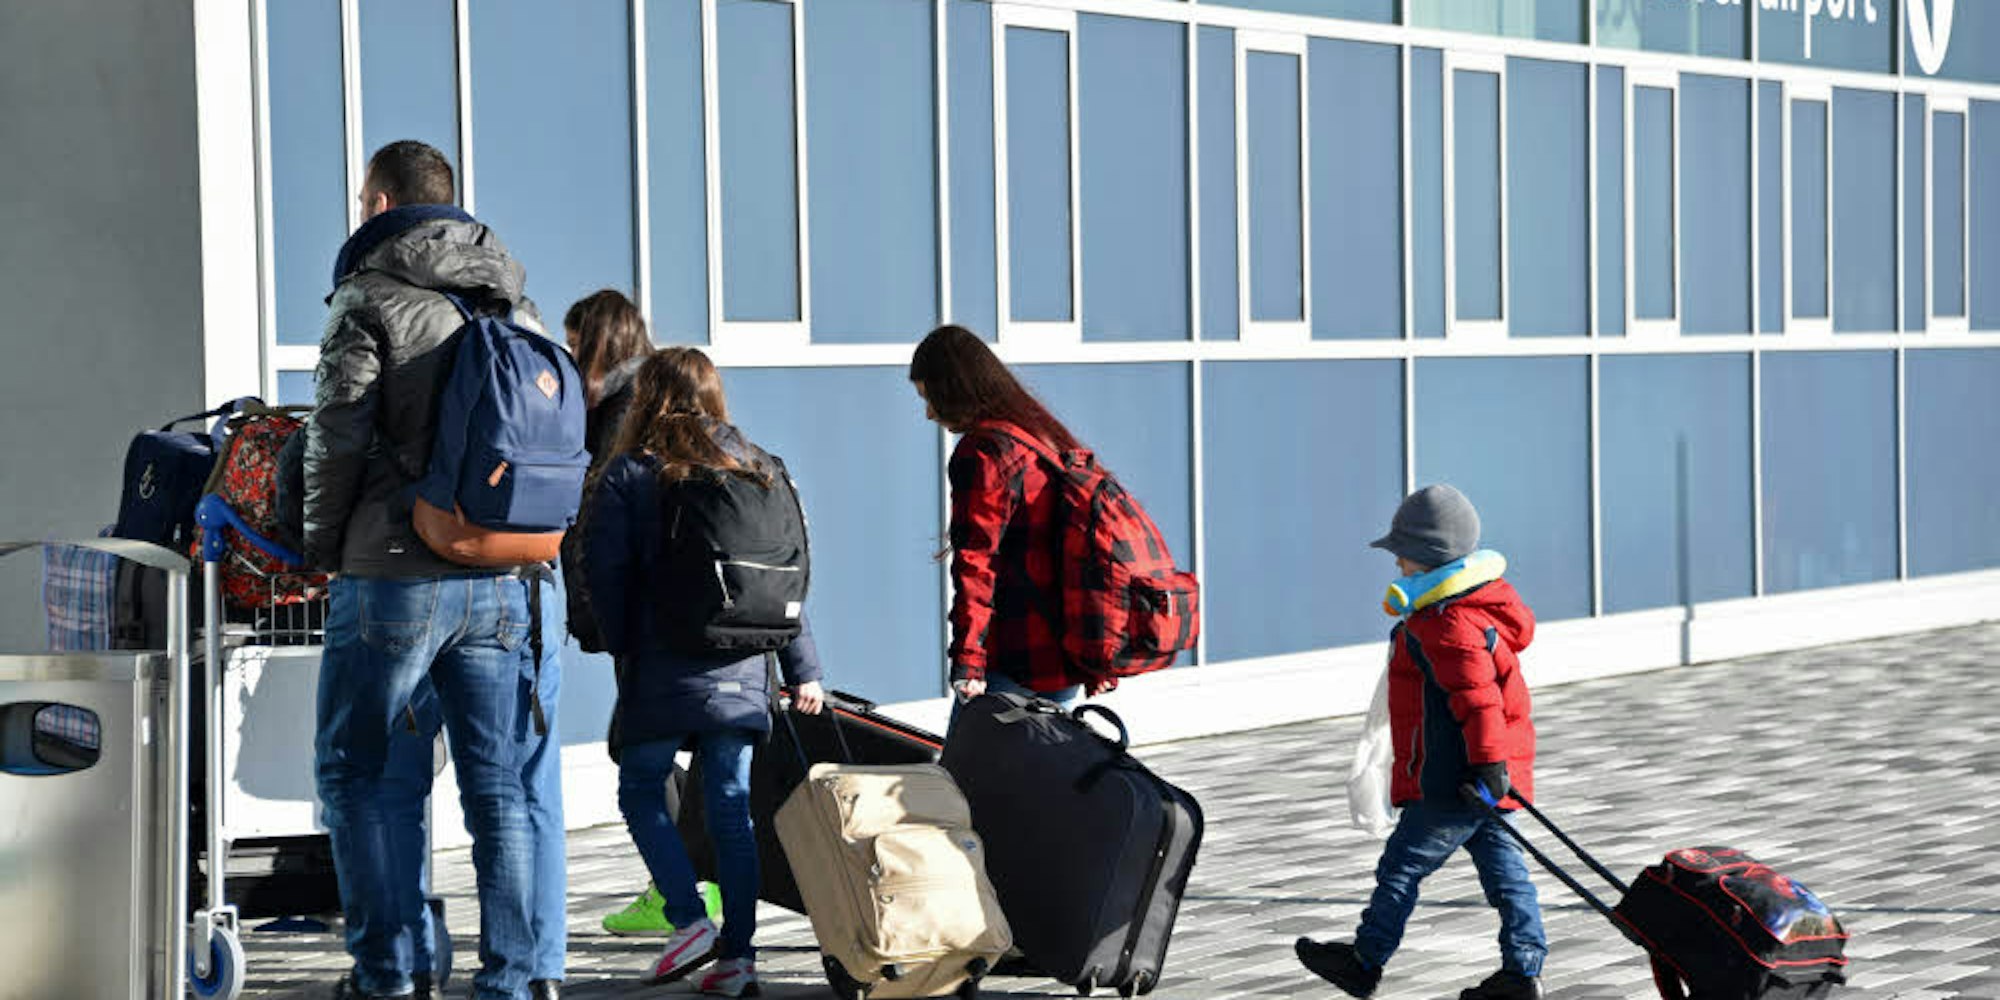 Die Rückreise nach Albanien – wie diese als Asylbewerber abgelehnten Landsleute – soll auch die junge Familie antreten, die zeitweise in Ründeroth untergebracht war. Vor dem, was sie in der Heimat erwartet, fürchten sie sich. Deshalb gehen sie jetzt vor Gericht.